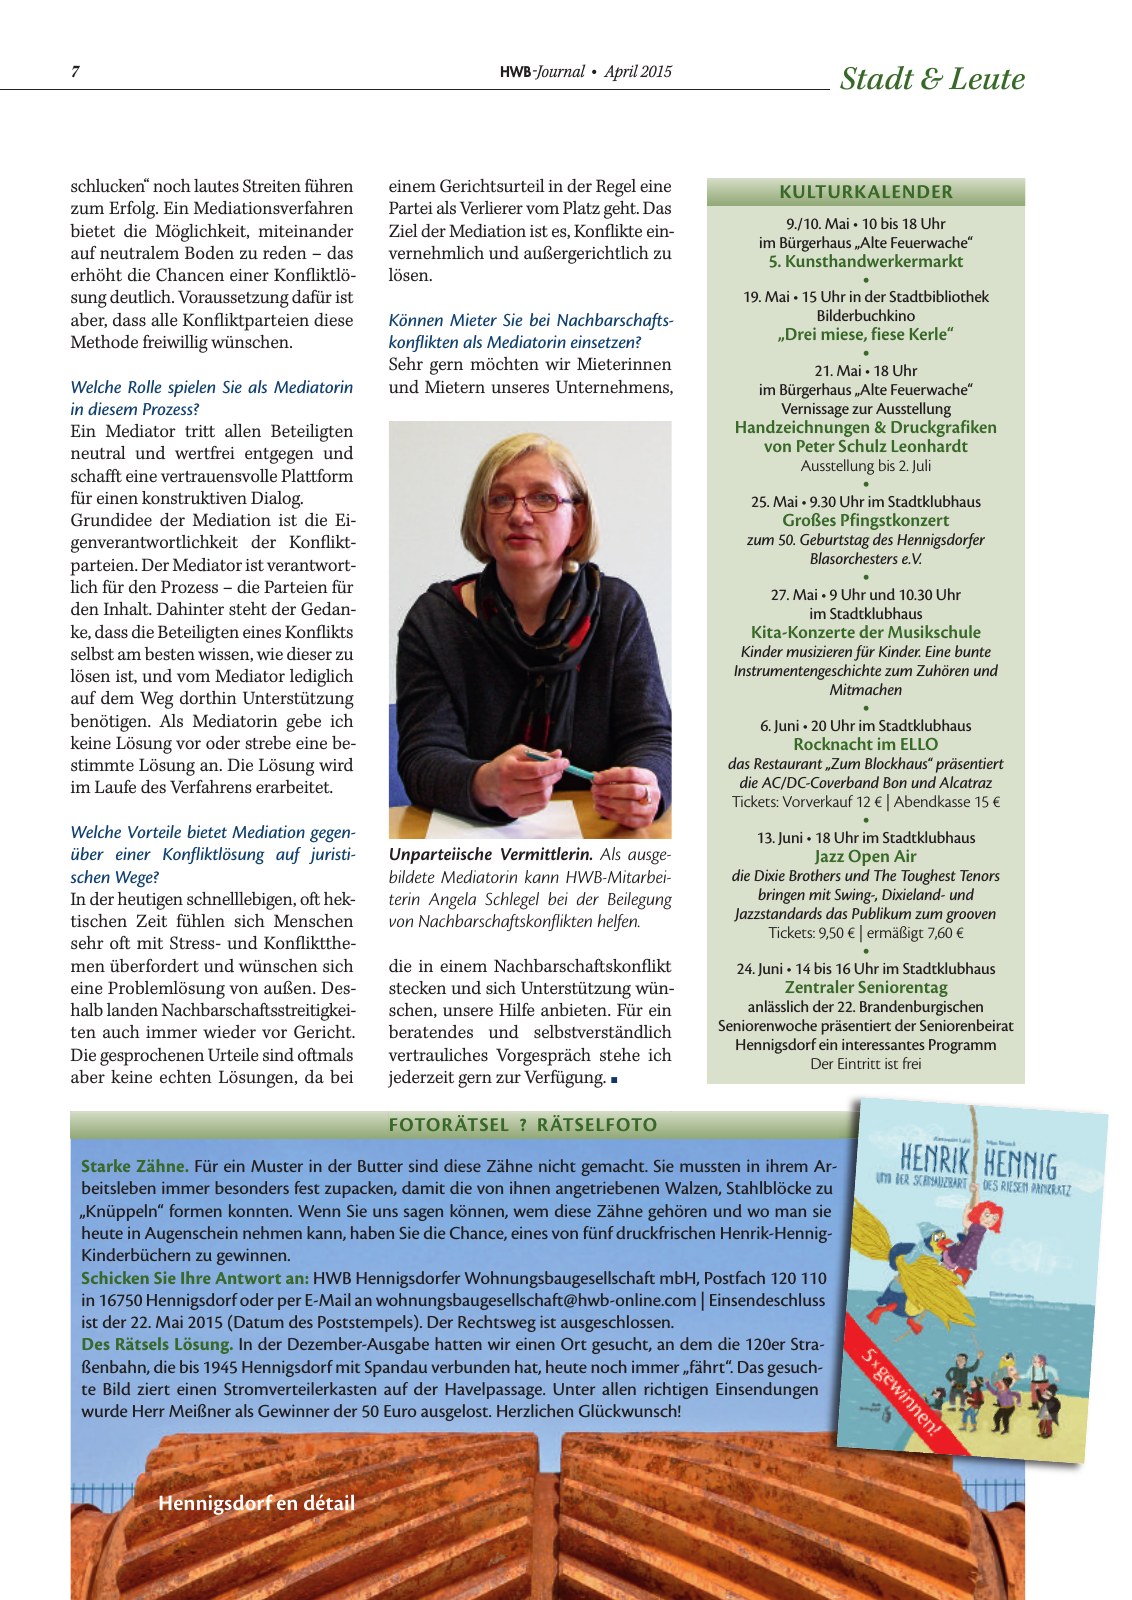 Vorschau HWB-Journal | April 2015 Seite 7